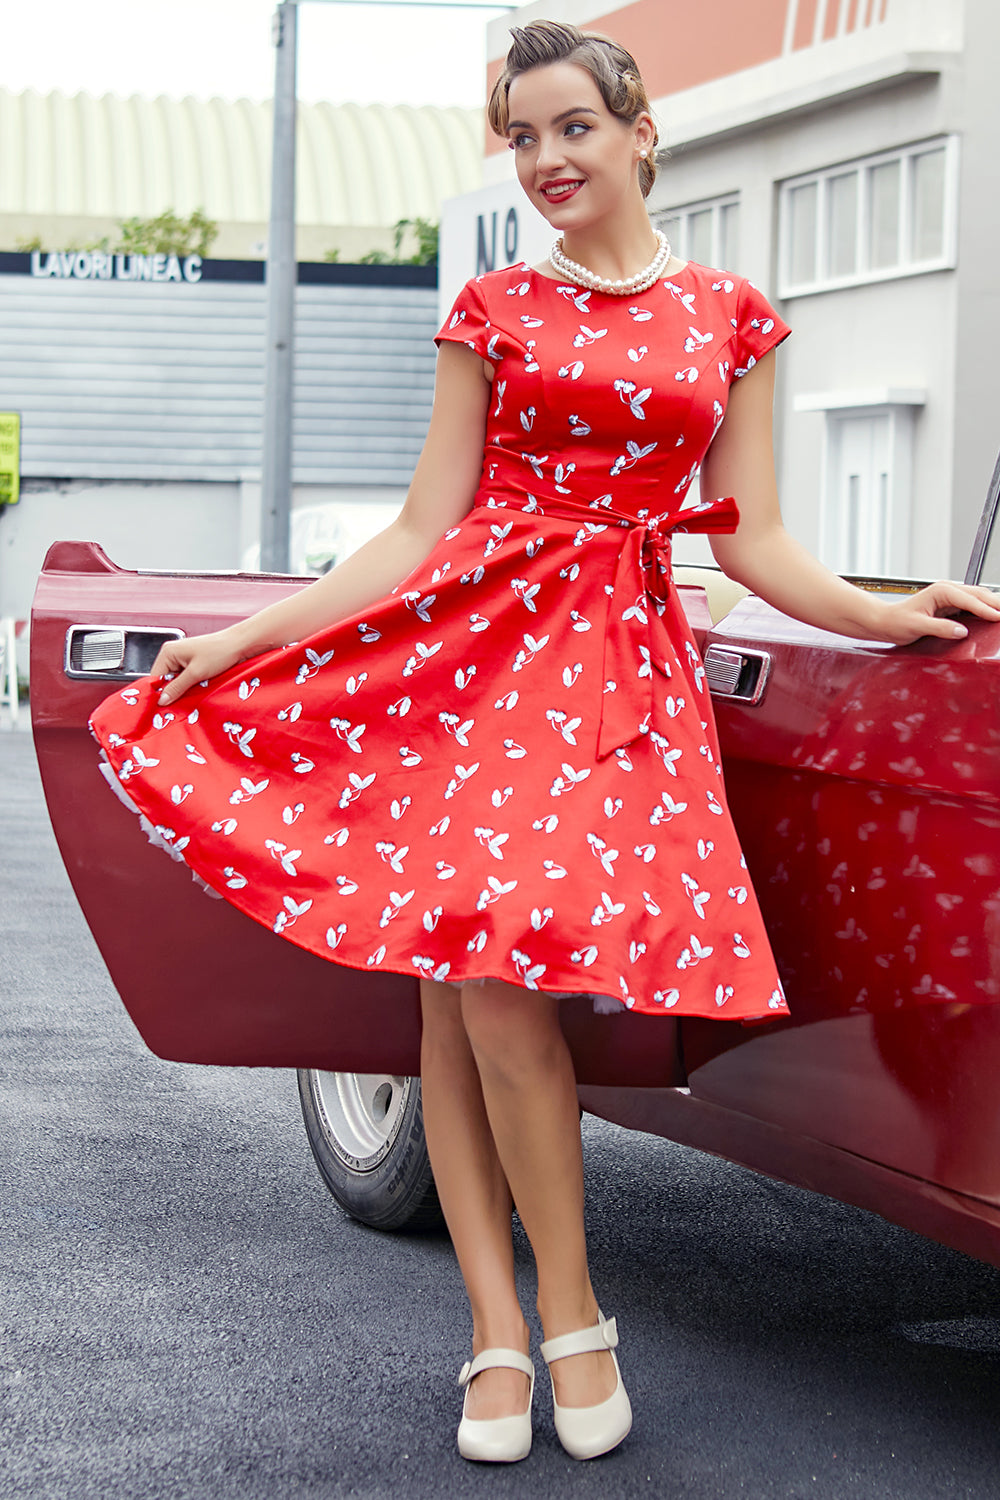 Rot Kirsche 1950er Swing Kleid